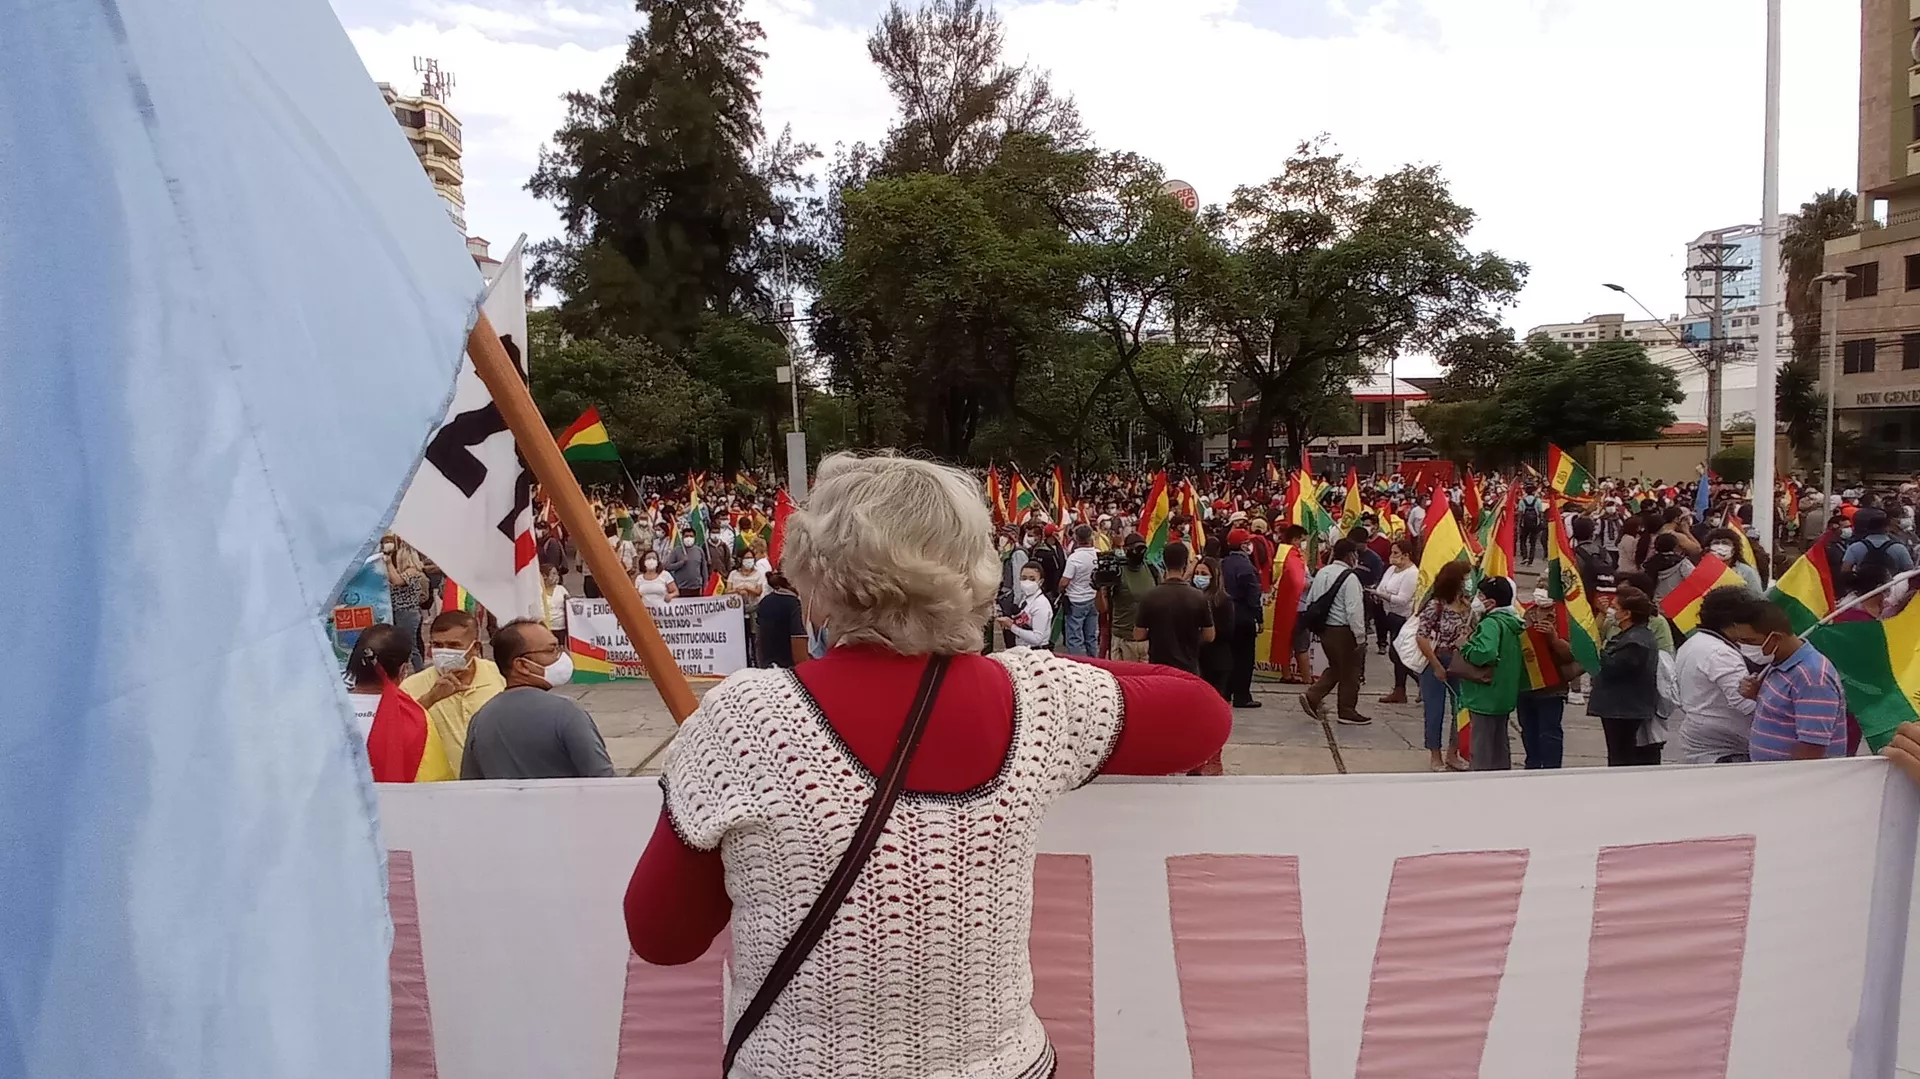  Se confirma un muerto en enfrentamientos en Bolivia durante protesta por censo